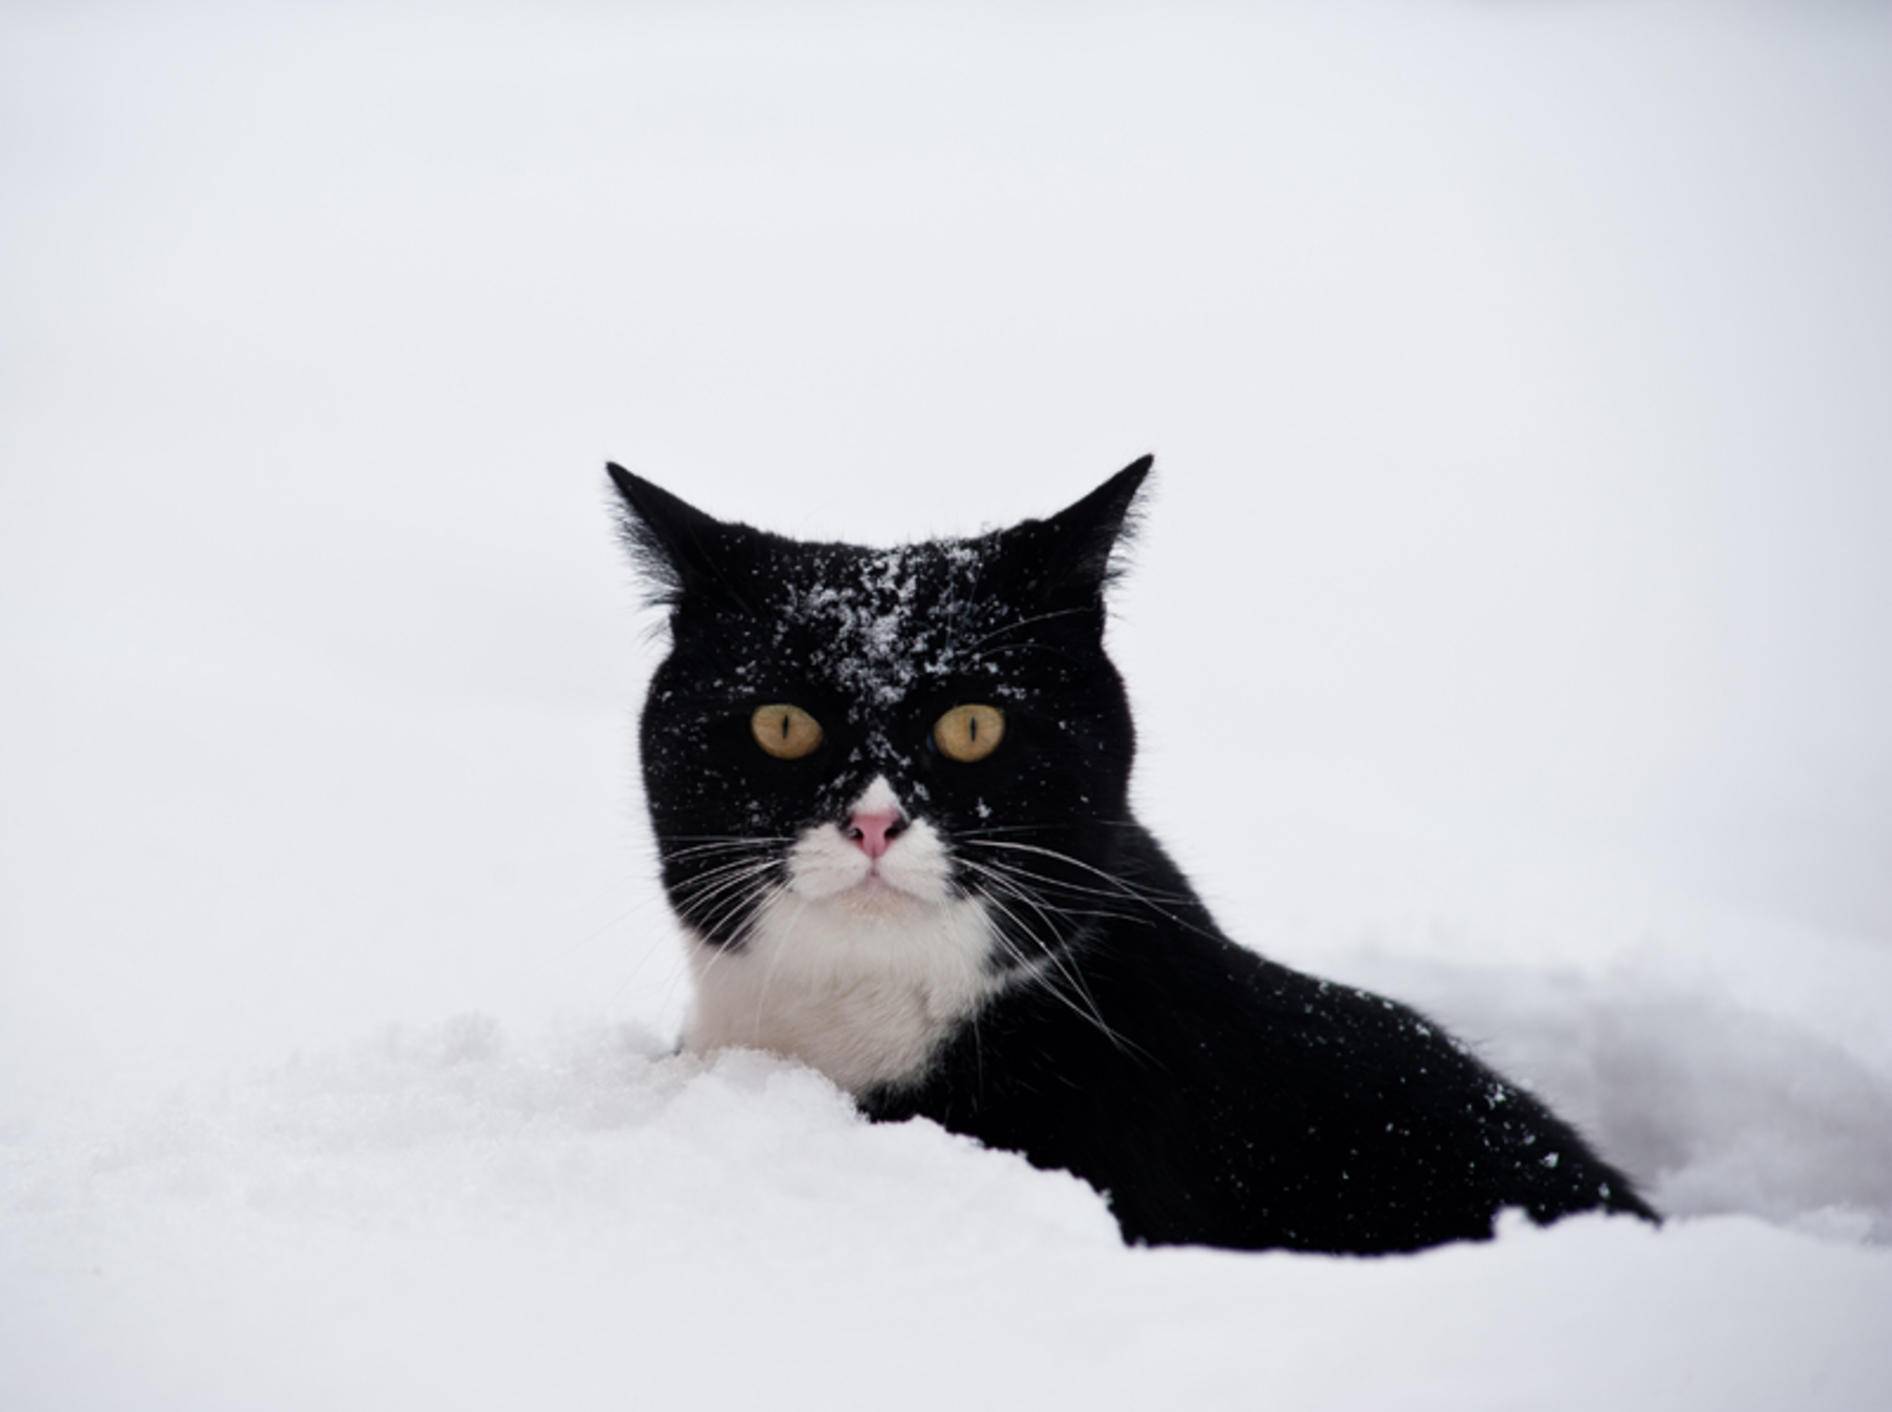 Brauchen Katzen im Winter anderes Futter als sonst? – Shutterstock / pio3